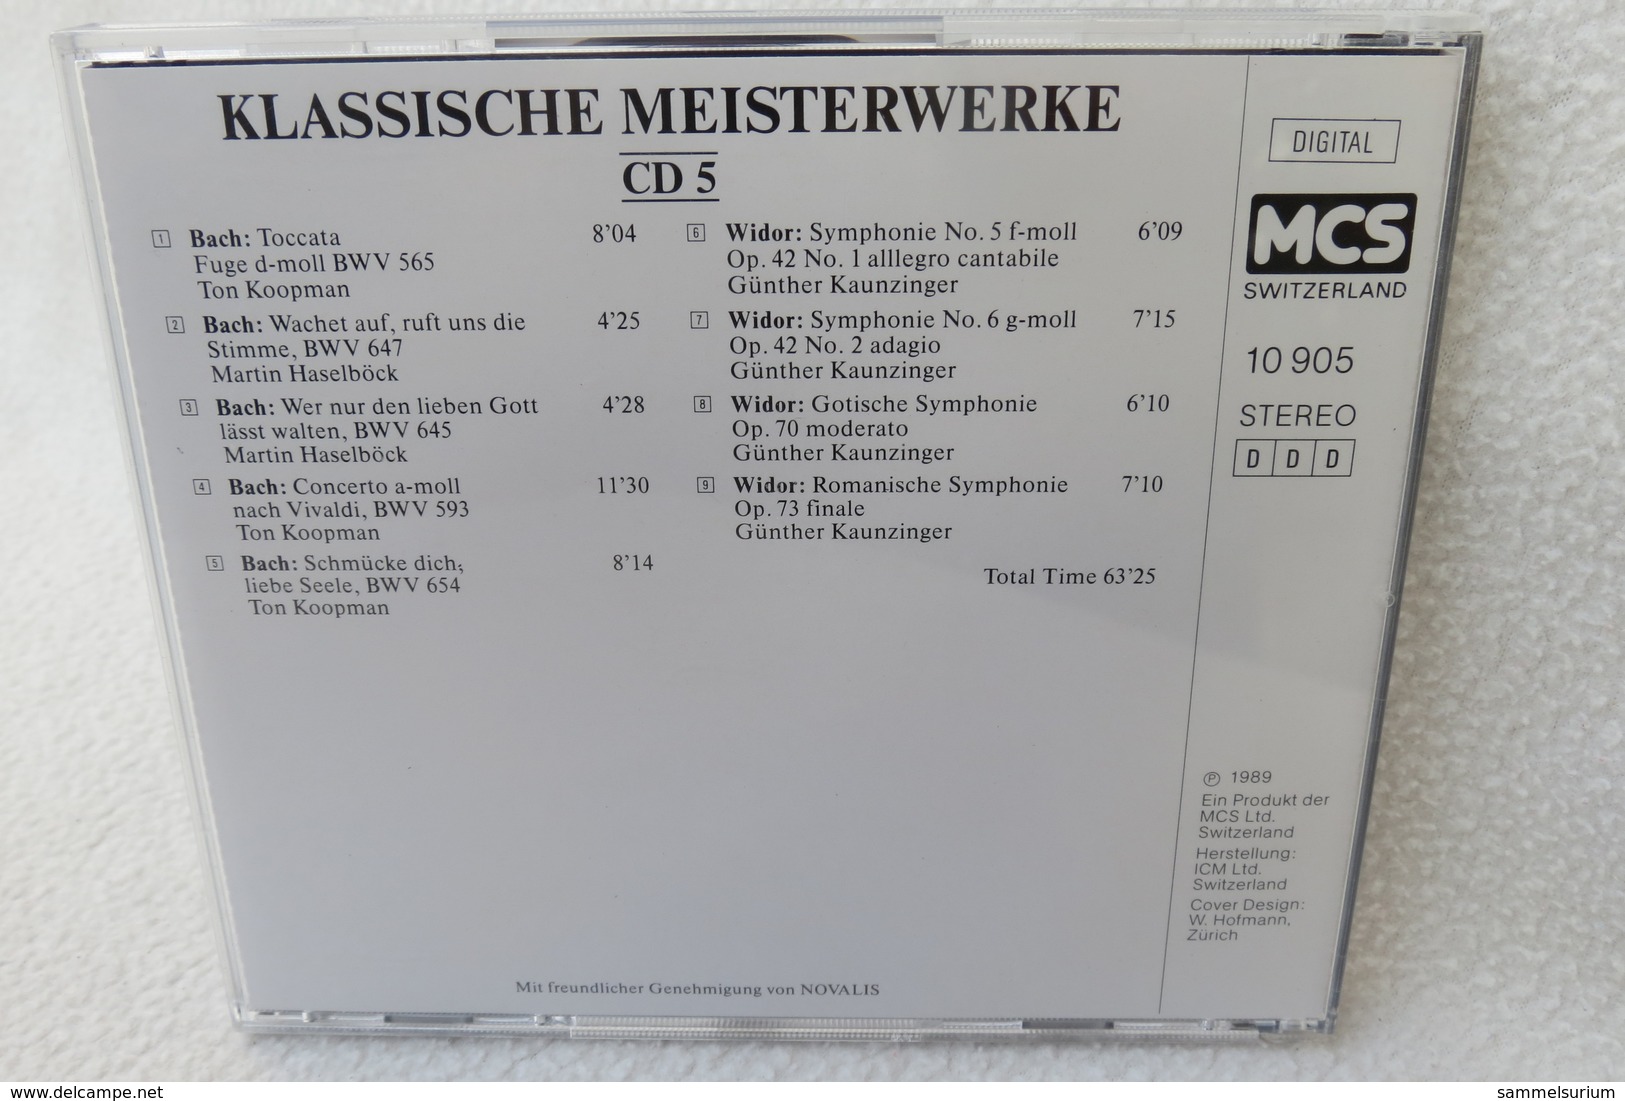 5 CDs "Klassische Meisterwerke" die schönsten klassischen Werke für Klavier, Violine, Trompete, Celle, Orgel